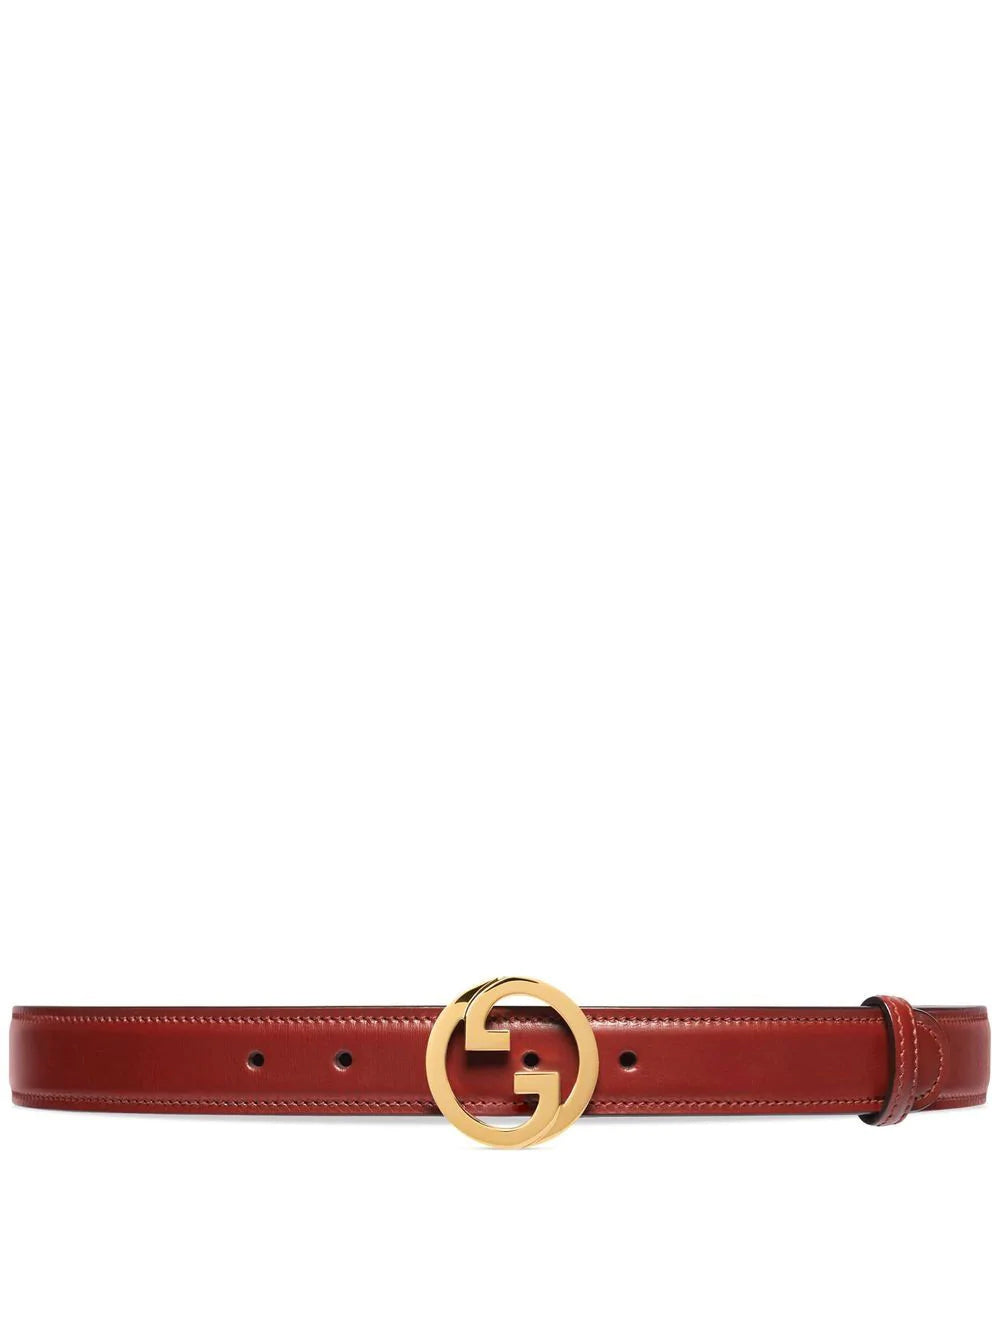 Gucci Blondie belt